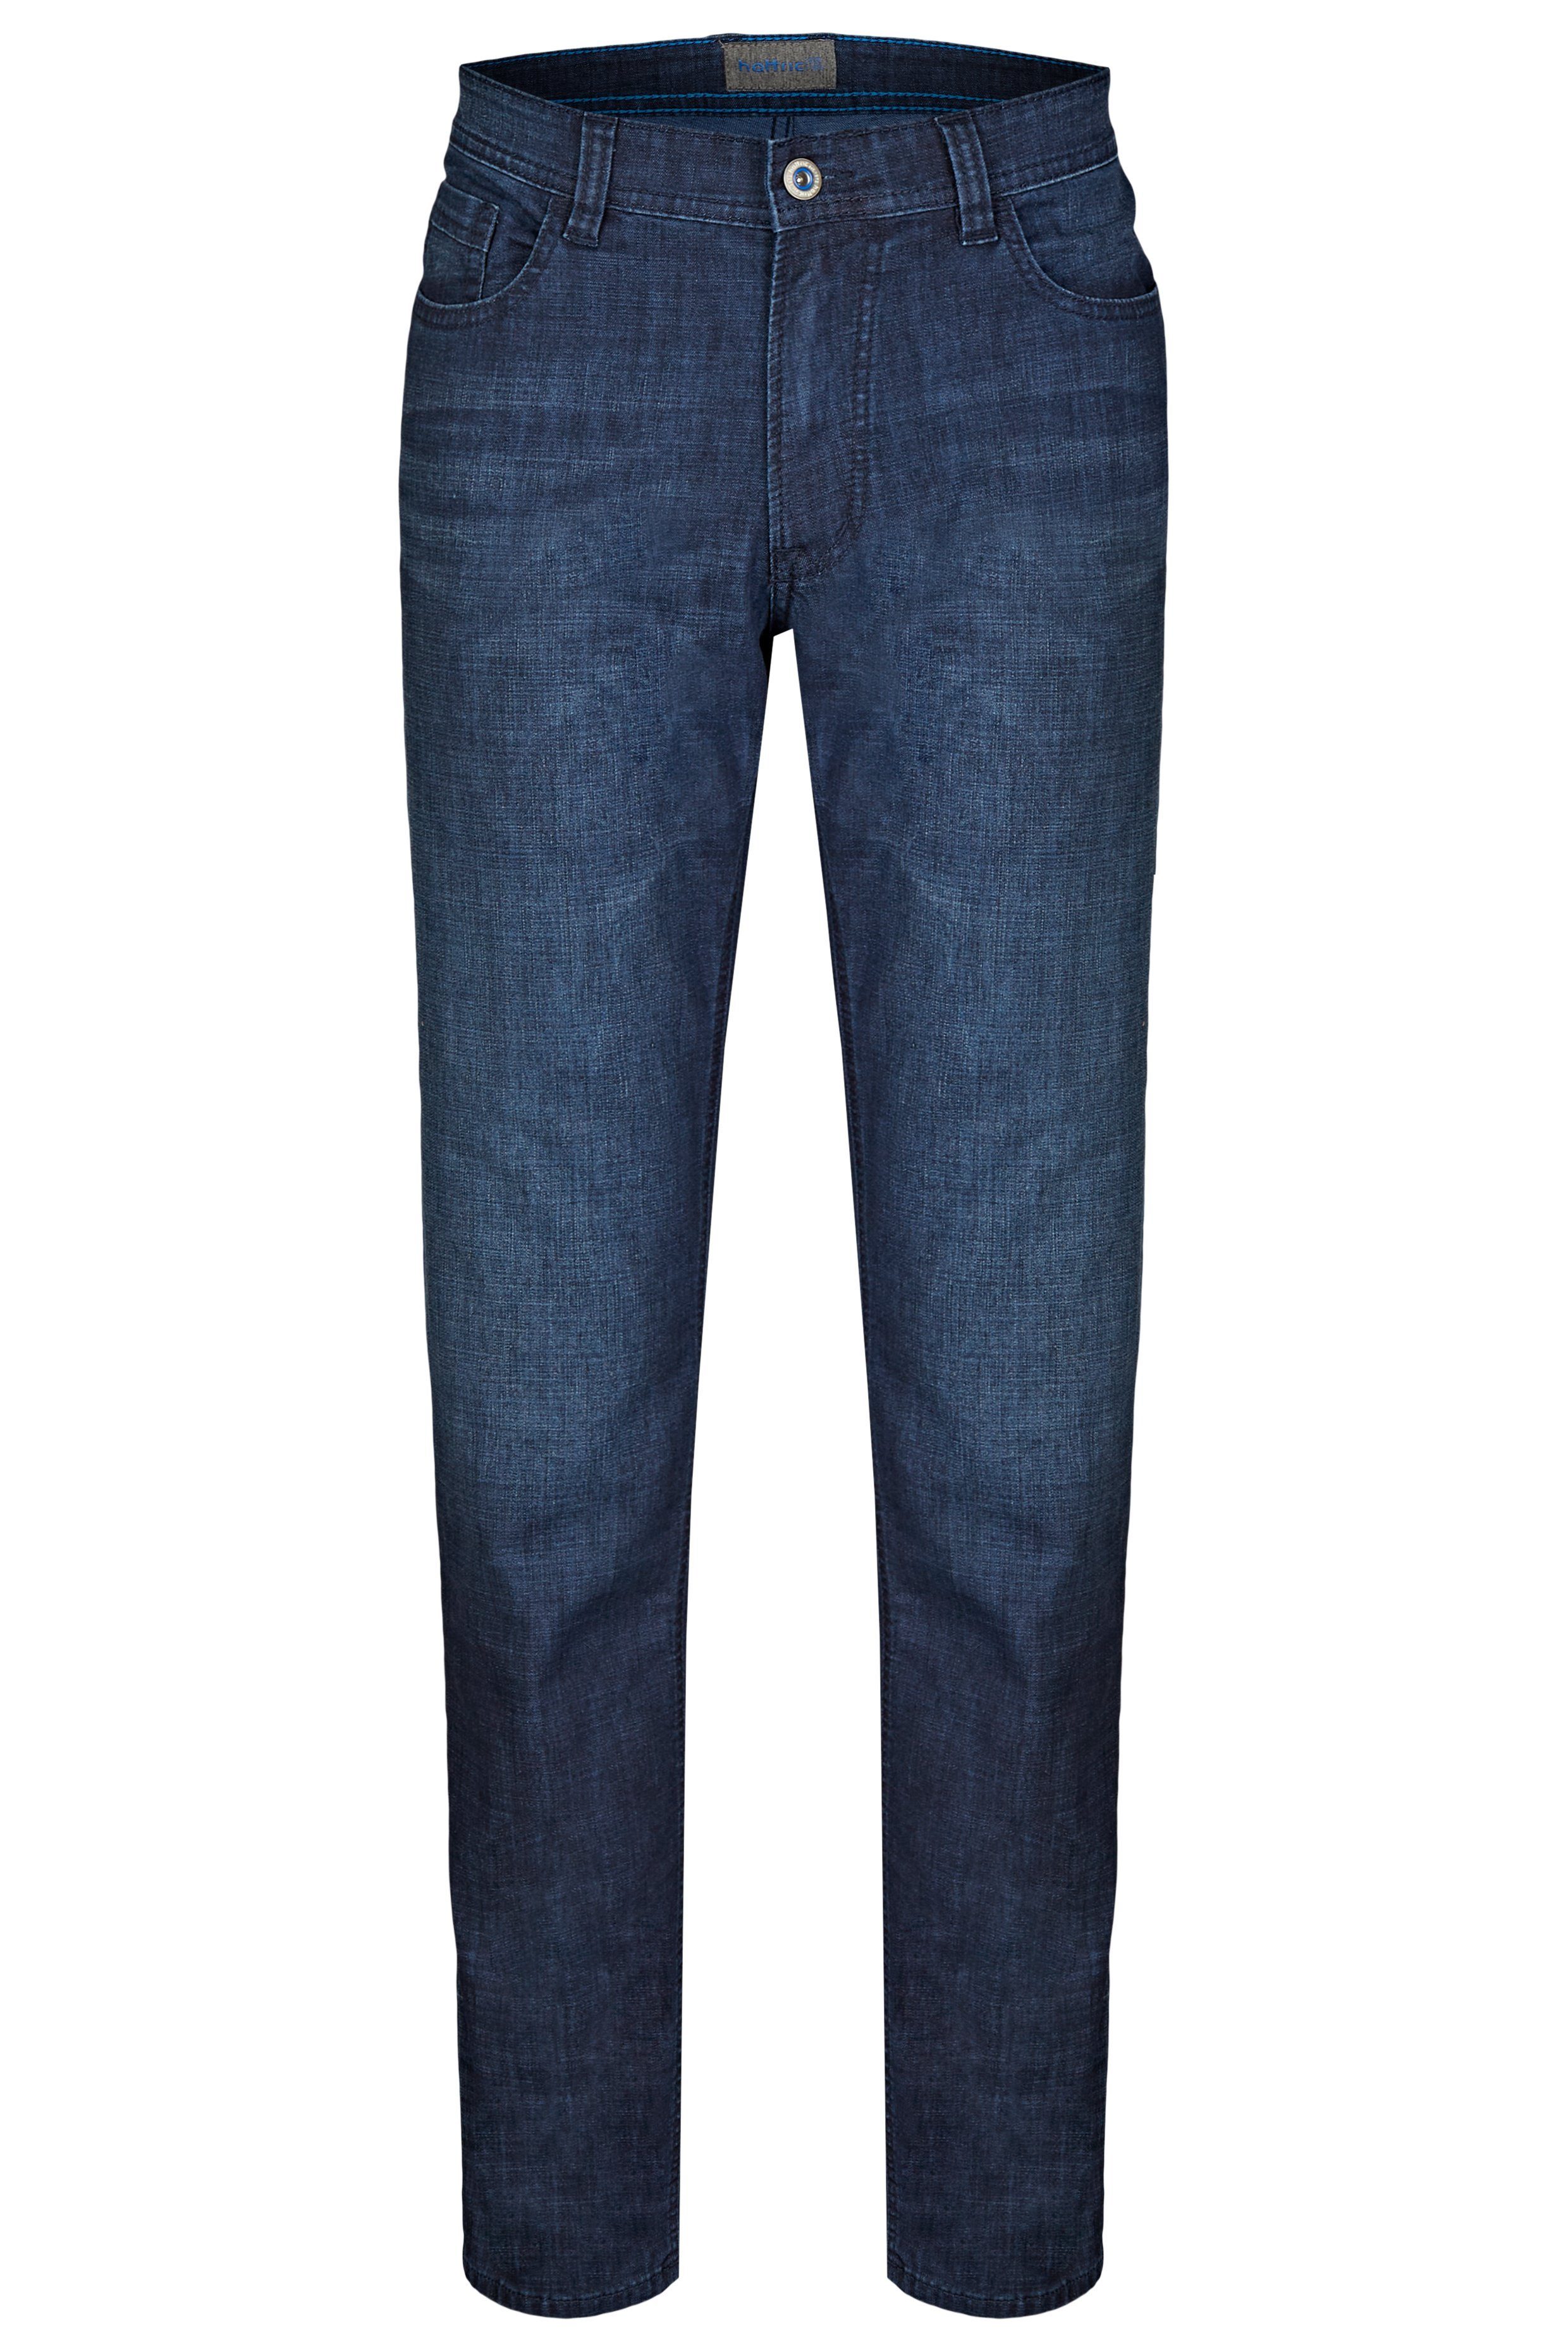 5-Pocket-Jeans Hunter 5-Pocket-Jeans dark Herren Hattric indigo Summer Hattric Denim